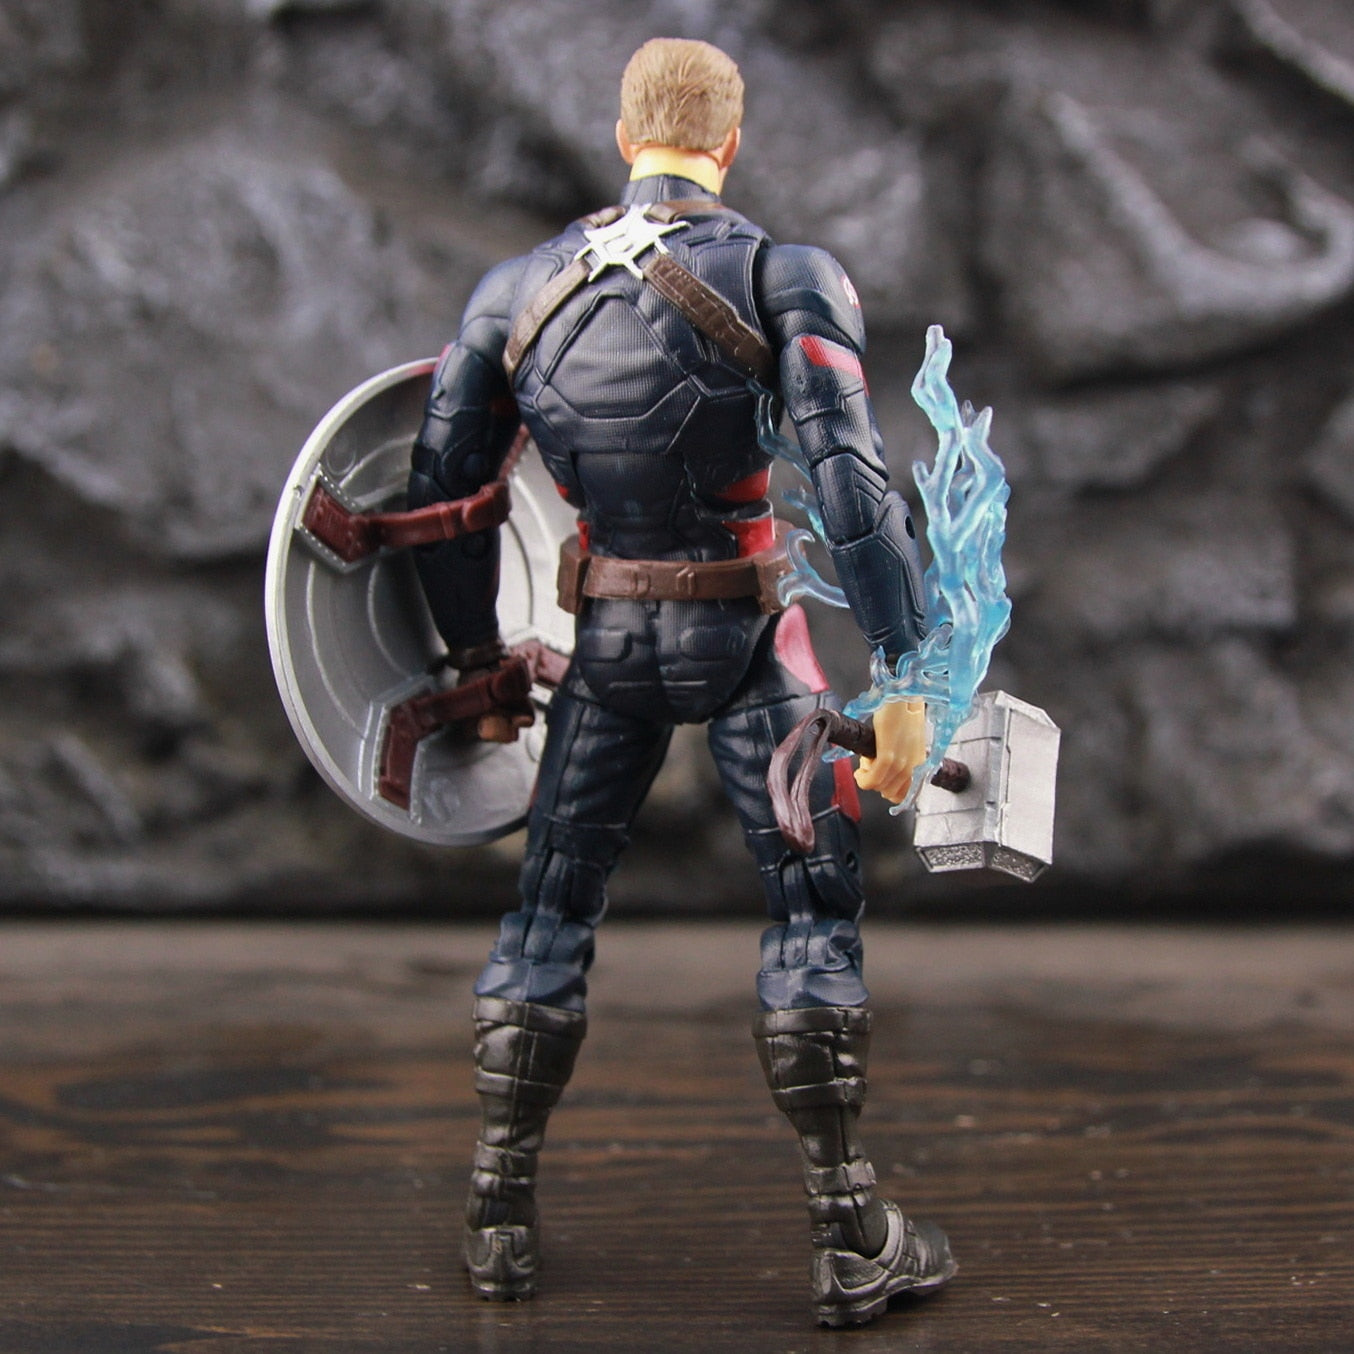 Avengers Endgame Captain America 6" Action Figure Marvel Legends Steven Rogers Mjolnir Worthy Figure